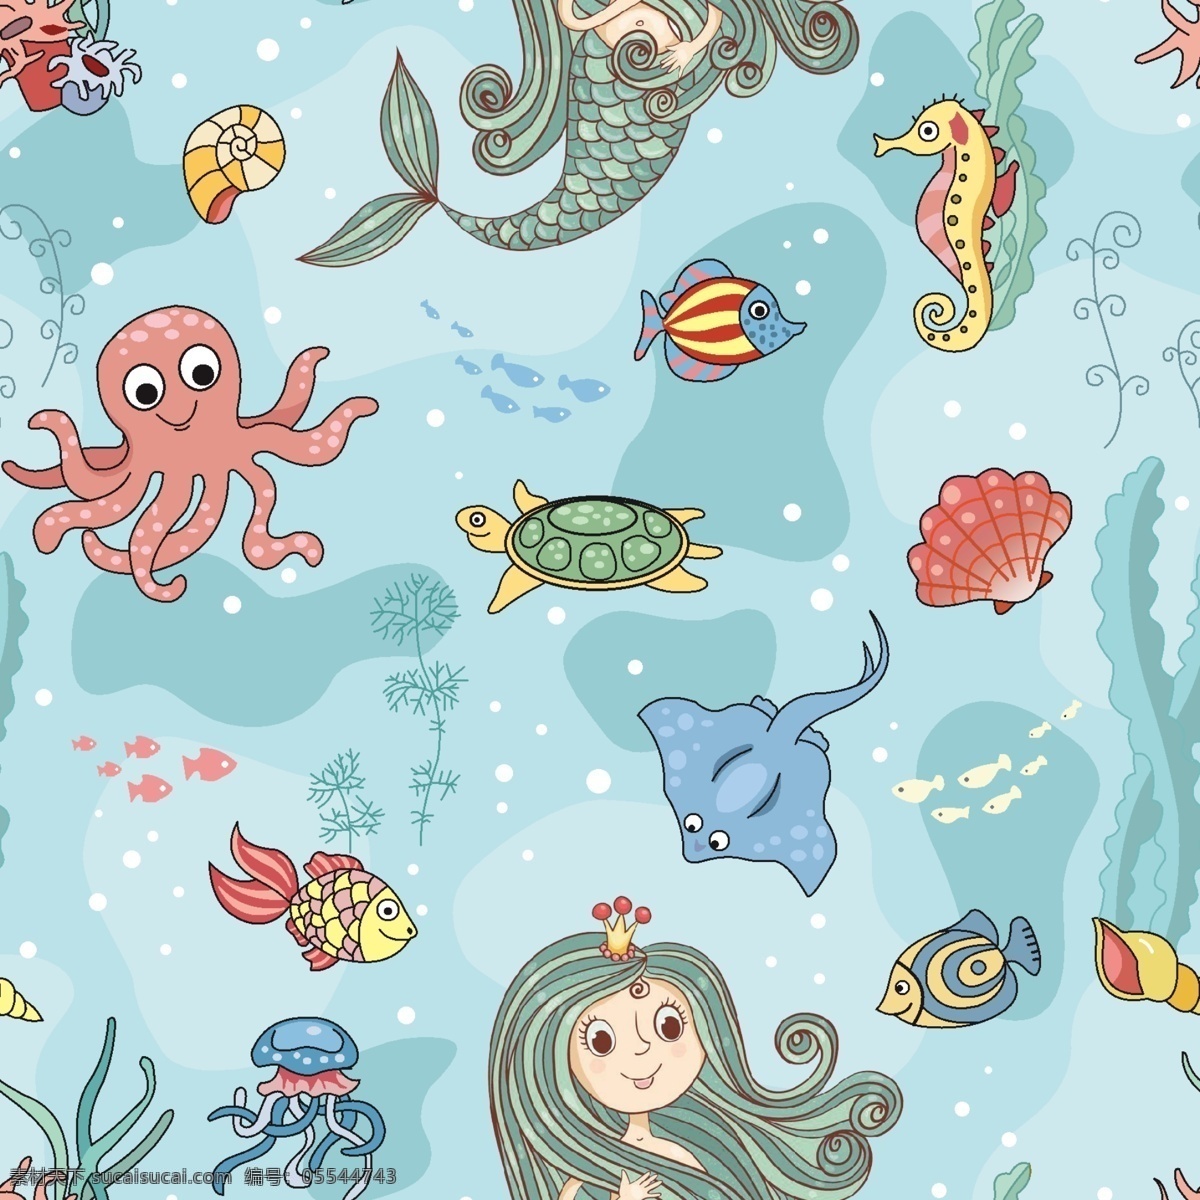 海底世界 卡通素材 美人鱼素材 海洋生物 章鱼 分层